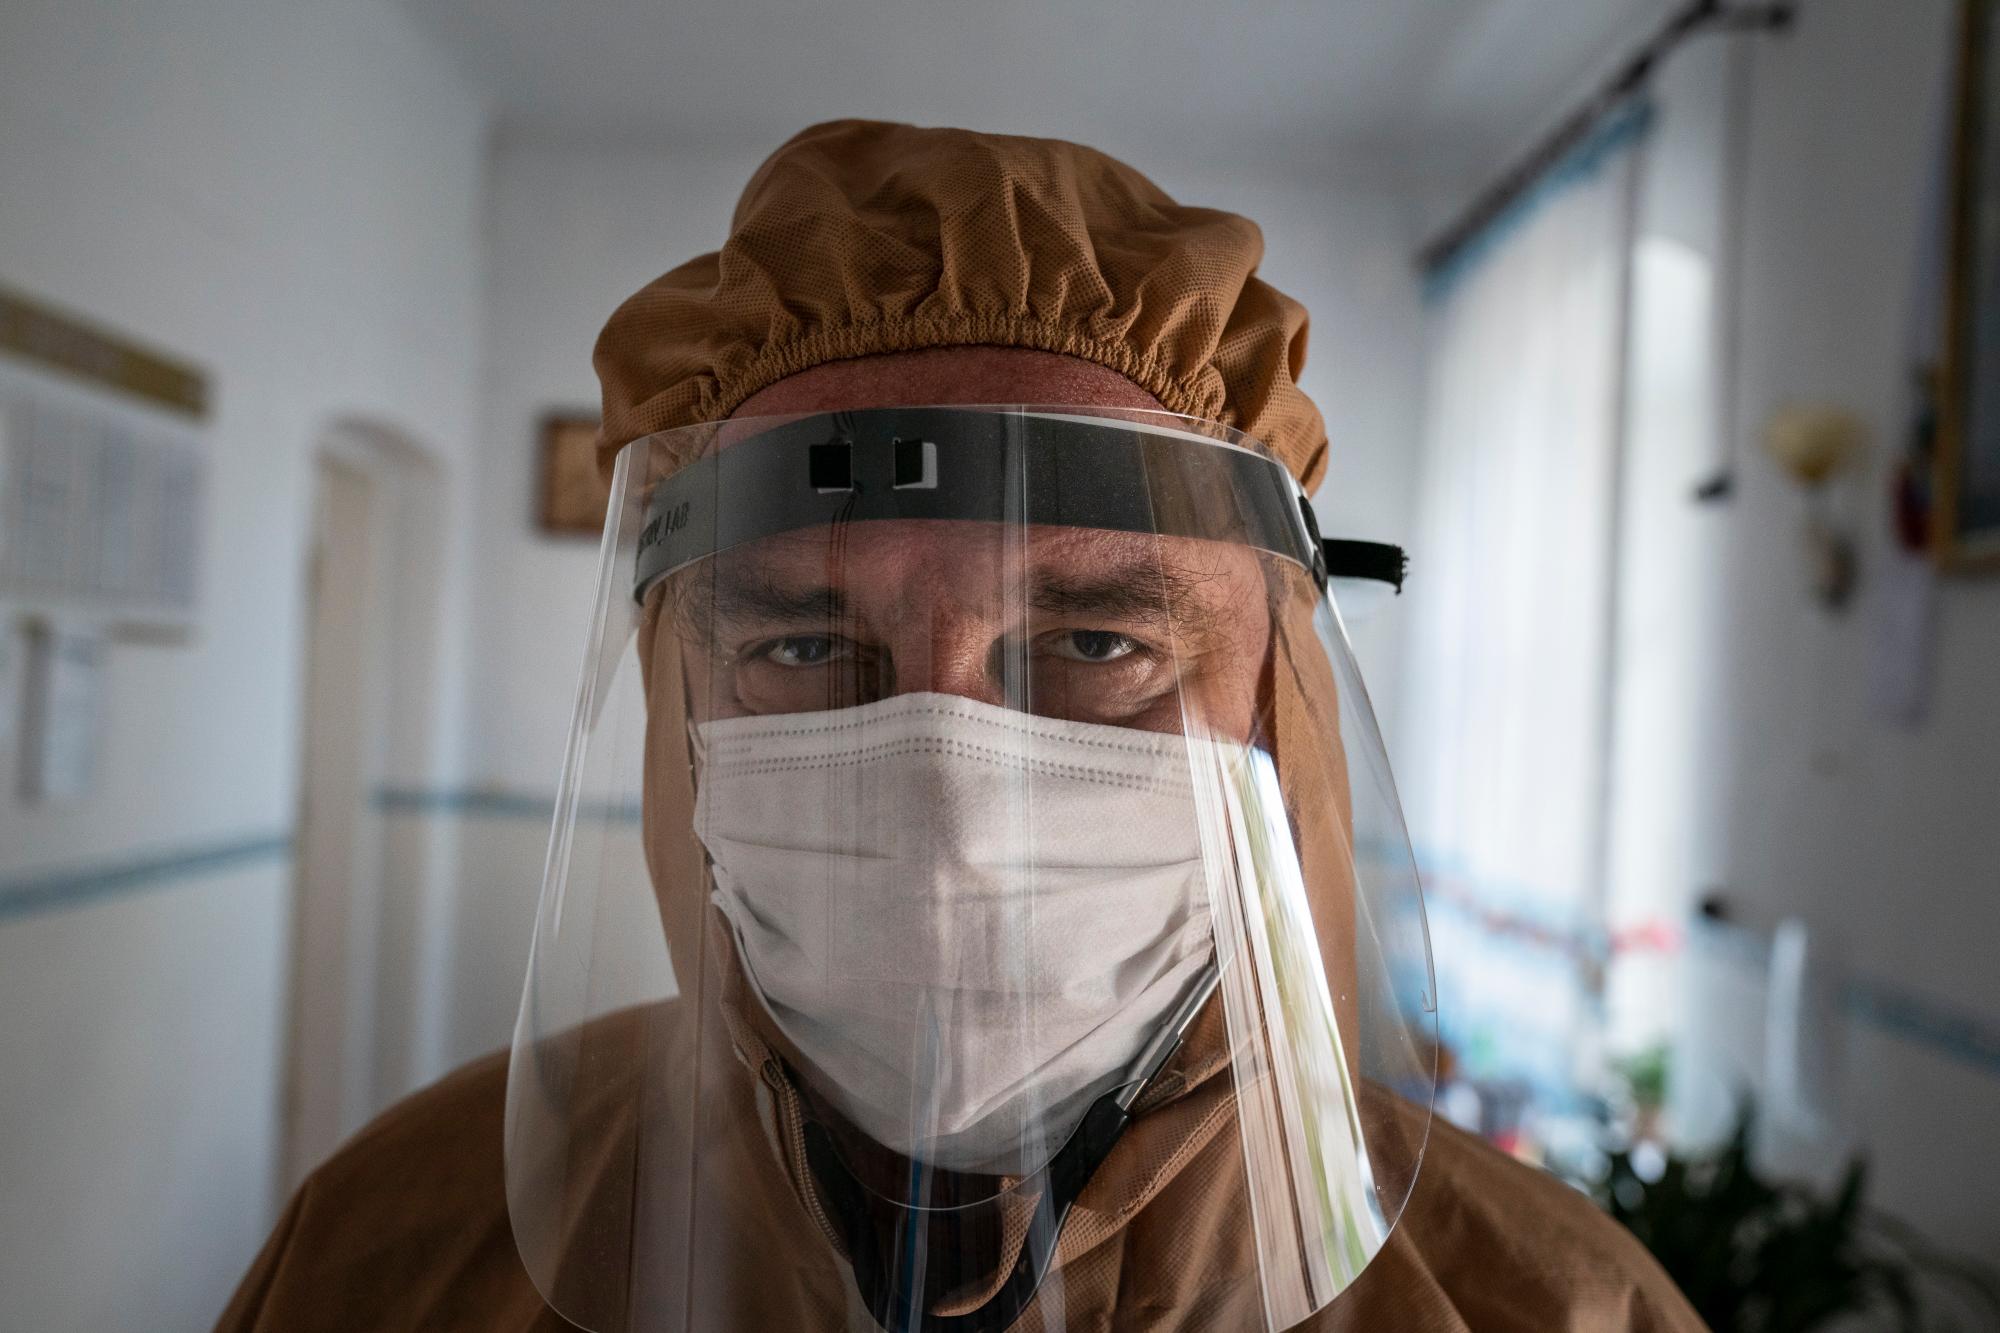 En esta foto tomada el viernes 1 de mayo de 2020, el doctor Ivan Venzhynovych, con un traje especial para protegerse contra el coronavirus, posa para una foto después del examen matutino de pacientes con coronavirus en un hospital de Pochaiv, Ucrania. El problemático sistema de salud de Ucrania ha sido abrumado por COVID-19, a pesar de que ha reportado un número relativamente bajo de casos. (Foto AP / Evgeniy Maloletka)